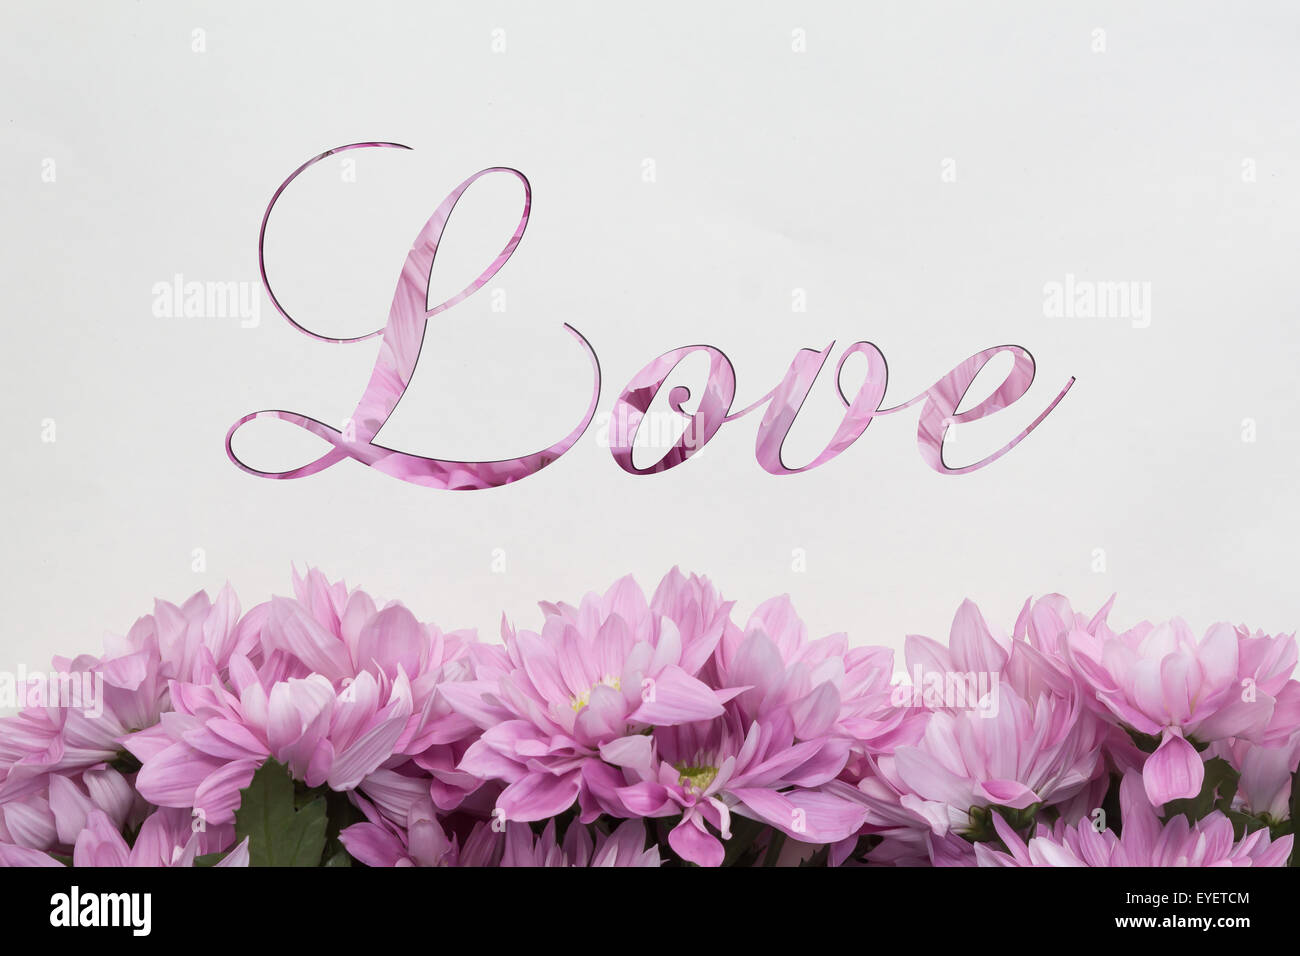 Amor flores - texto manuscrito y encantadora decoración floral Foto de stock